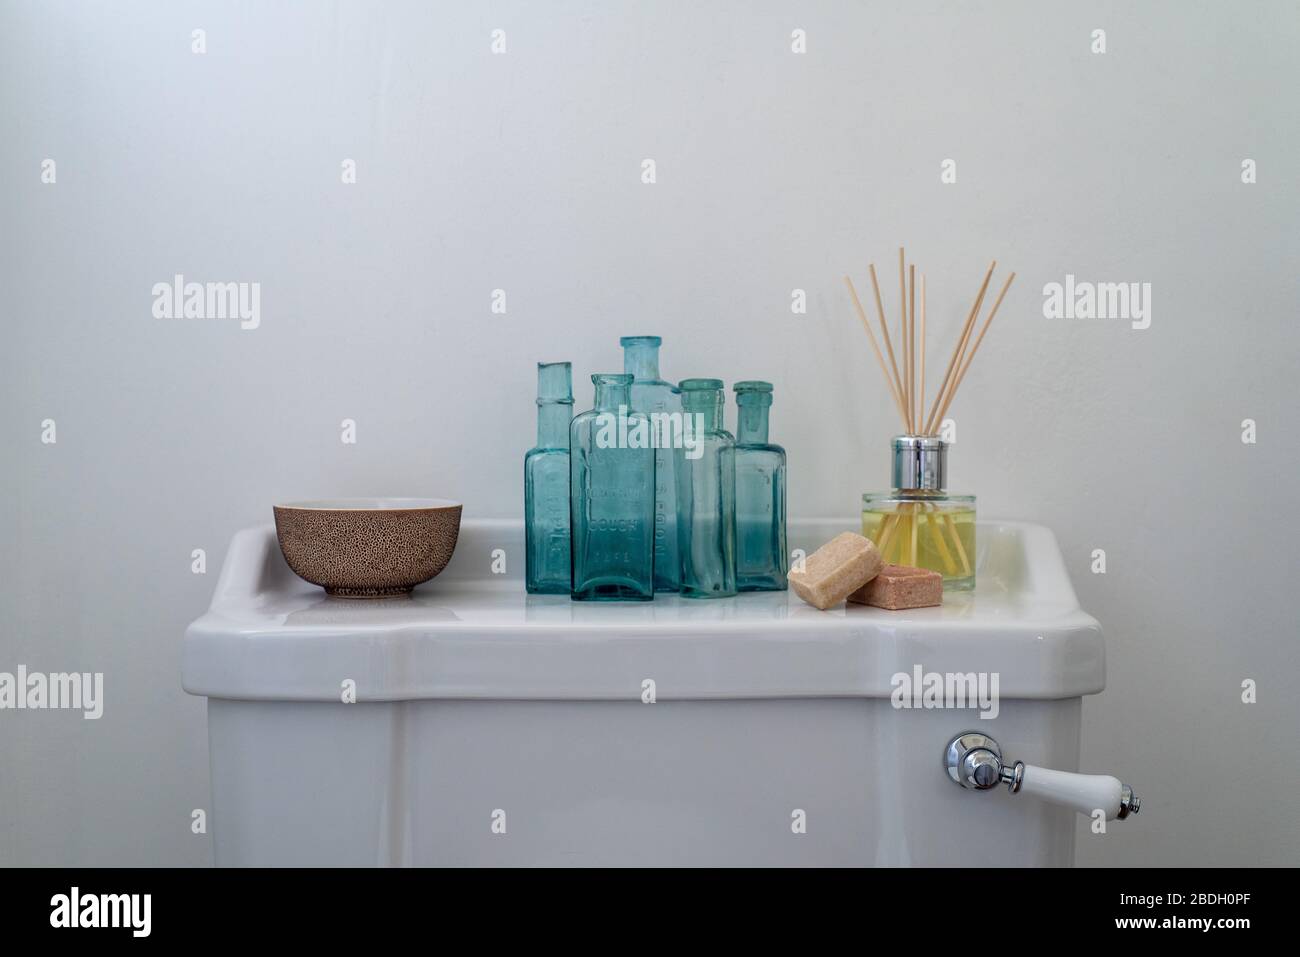 Eine Sammlung von unruhigen Gegenständen, die auf einer sauberen weißen toiletten-zisterne angezeigt werden Stockfoto